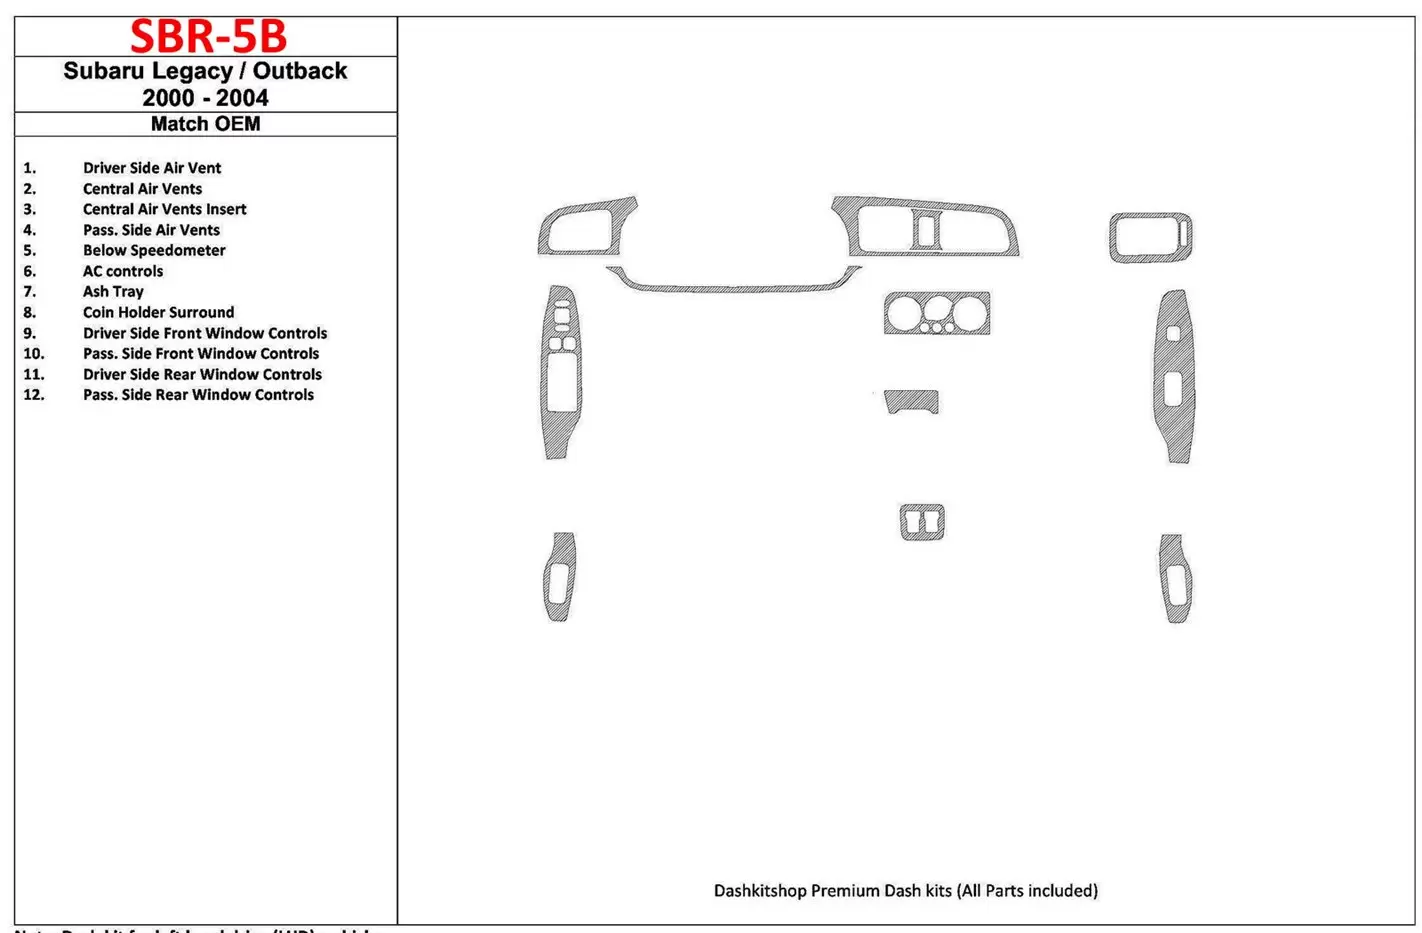 Subaru Legacy Outback 2000-2004 Avec OEM Wood Kit BD Kit la décoration du tableau de bord - 1 - habillage decor de tableau de bo